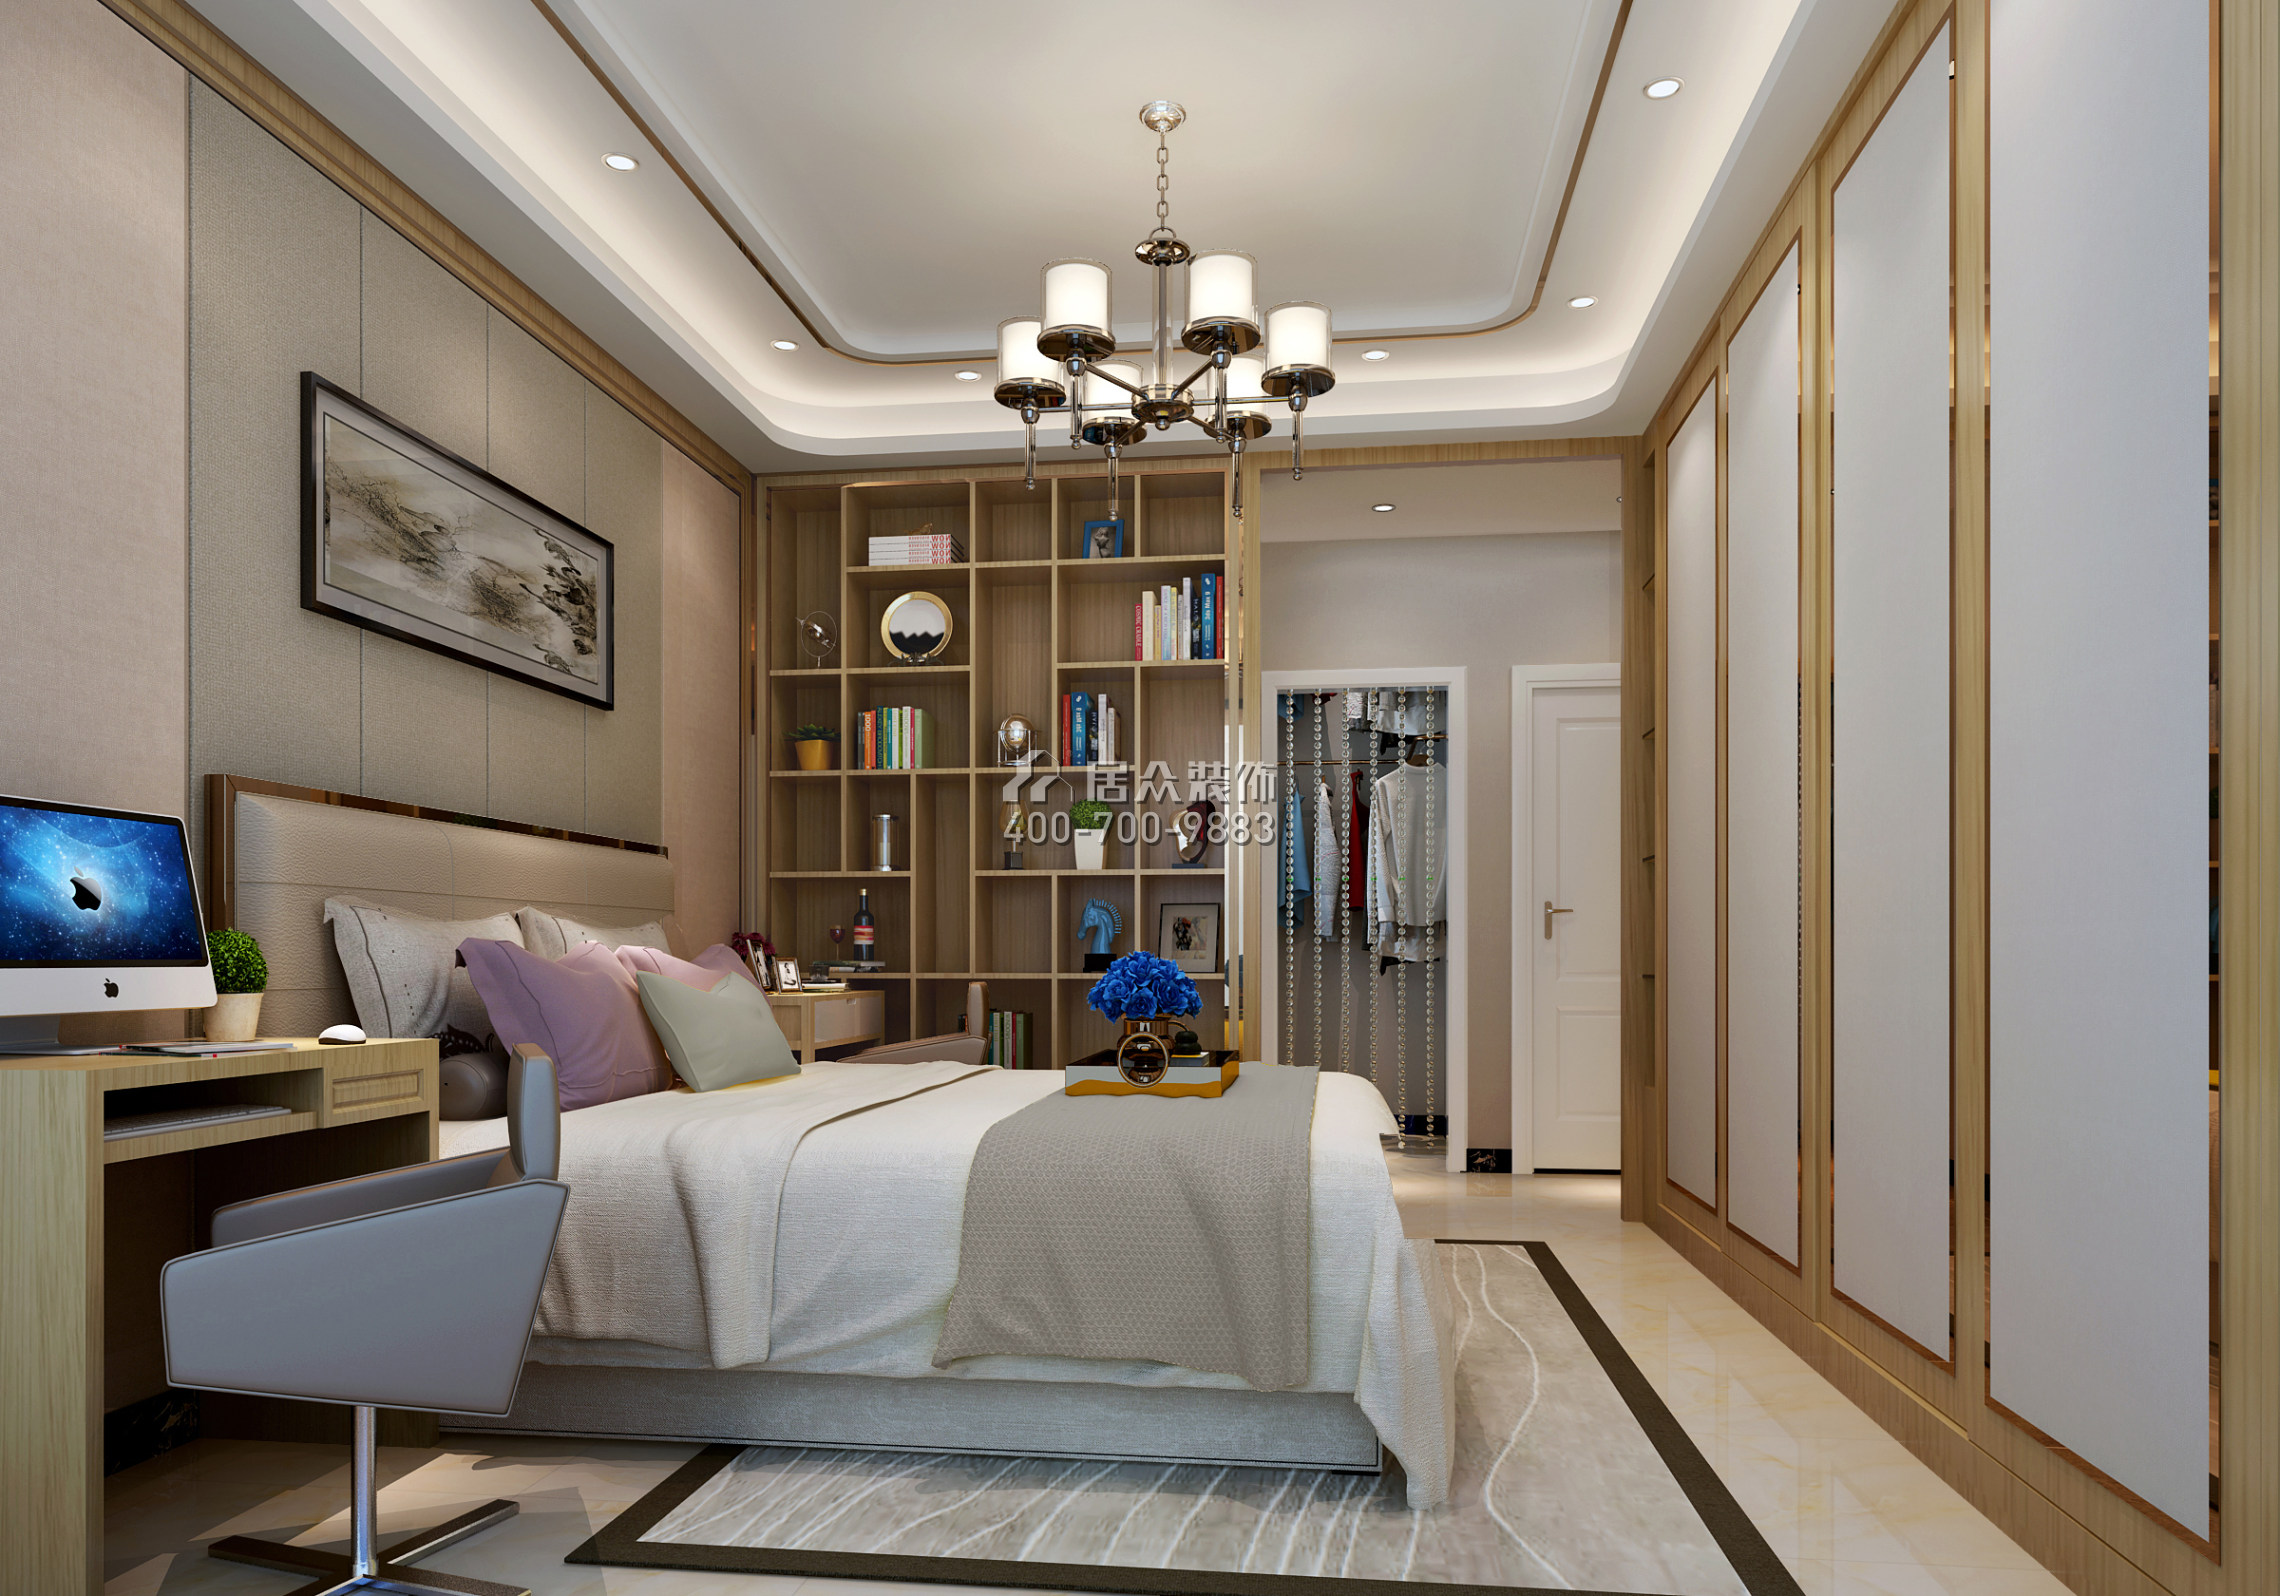 鸿景园140平方米现代简约风格平层户型卧室装修效果图